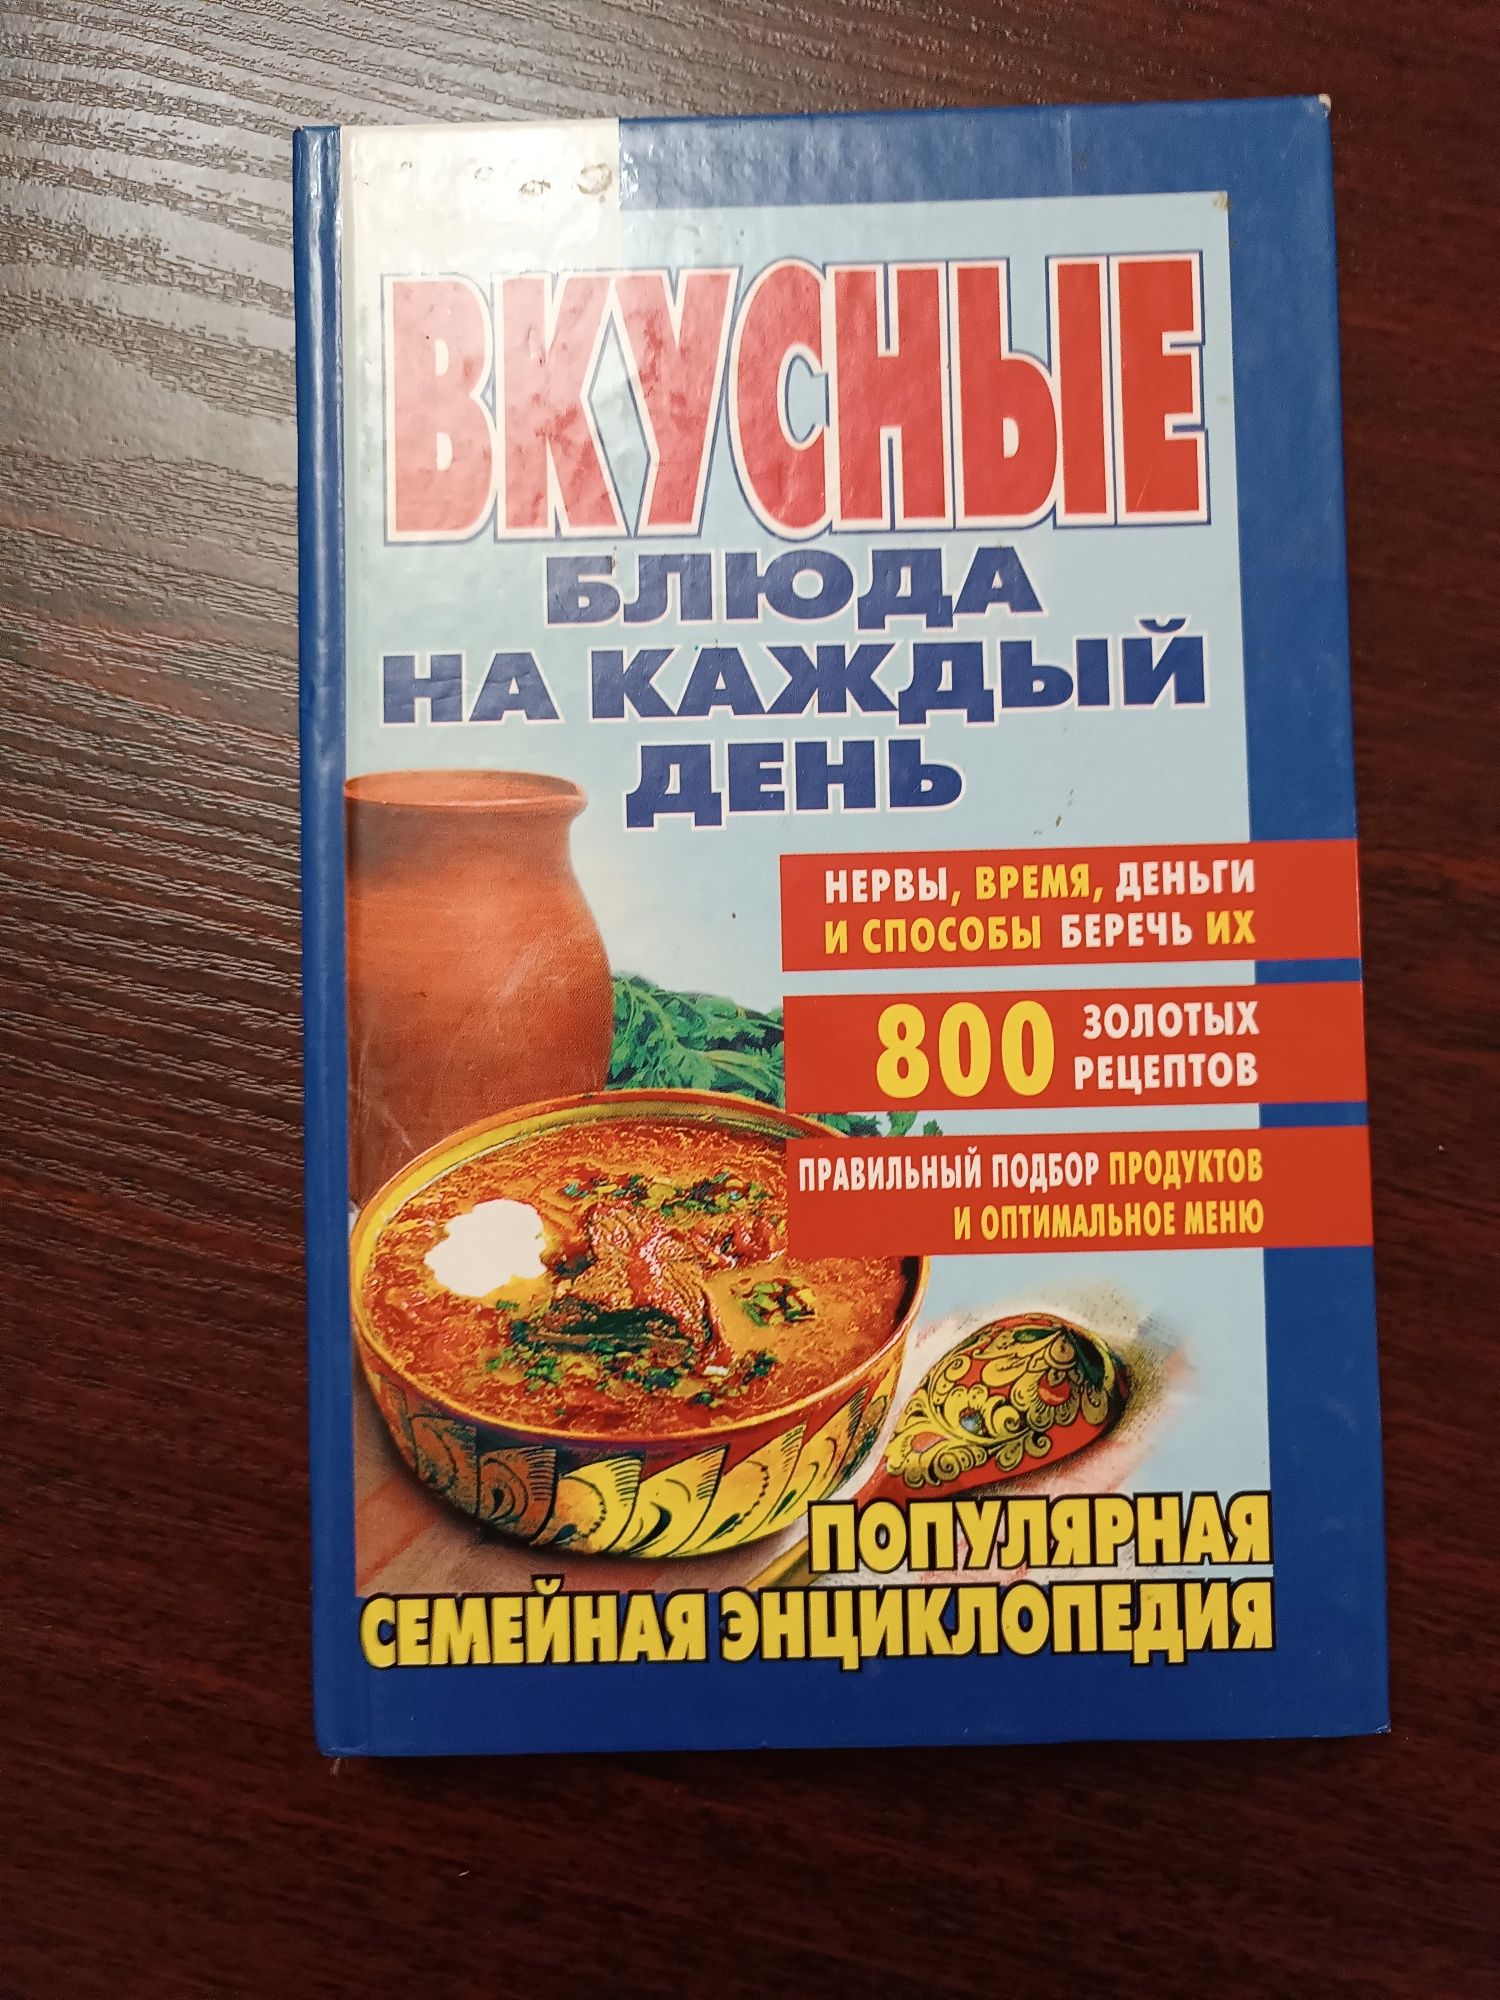 Книга "вкусные блюда на каждый день"